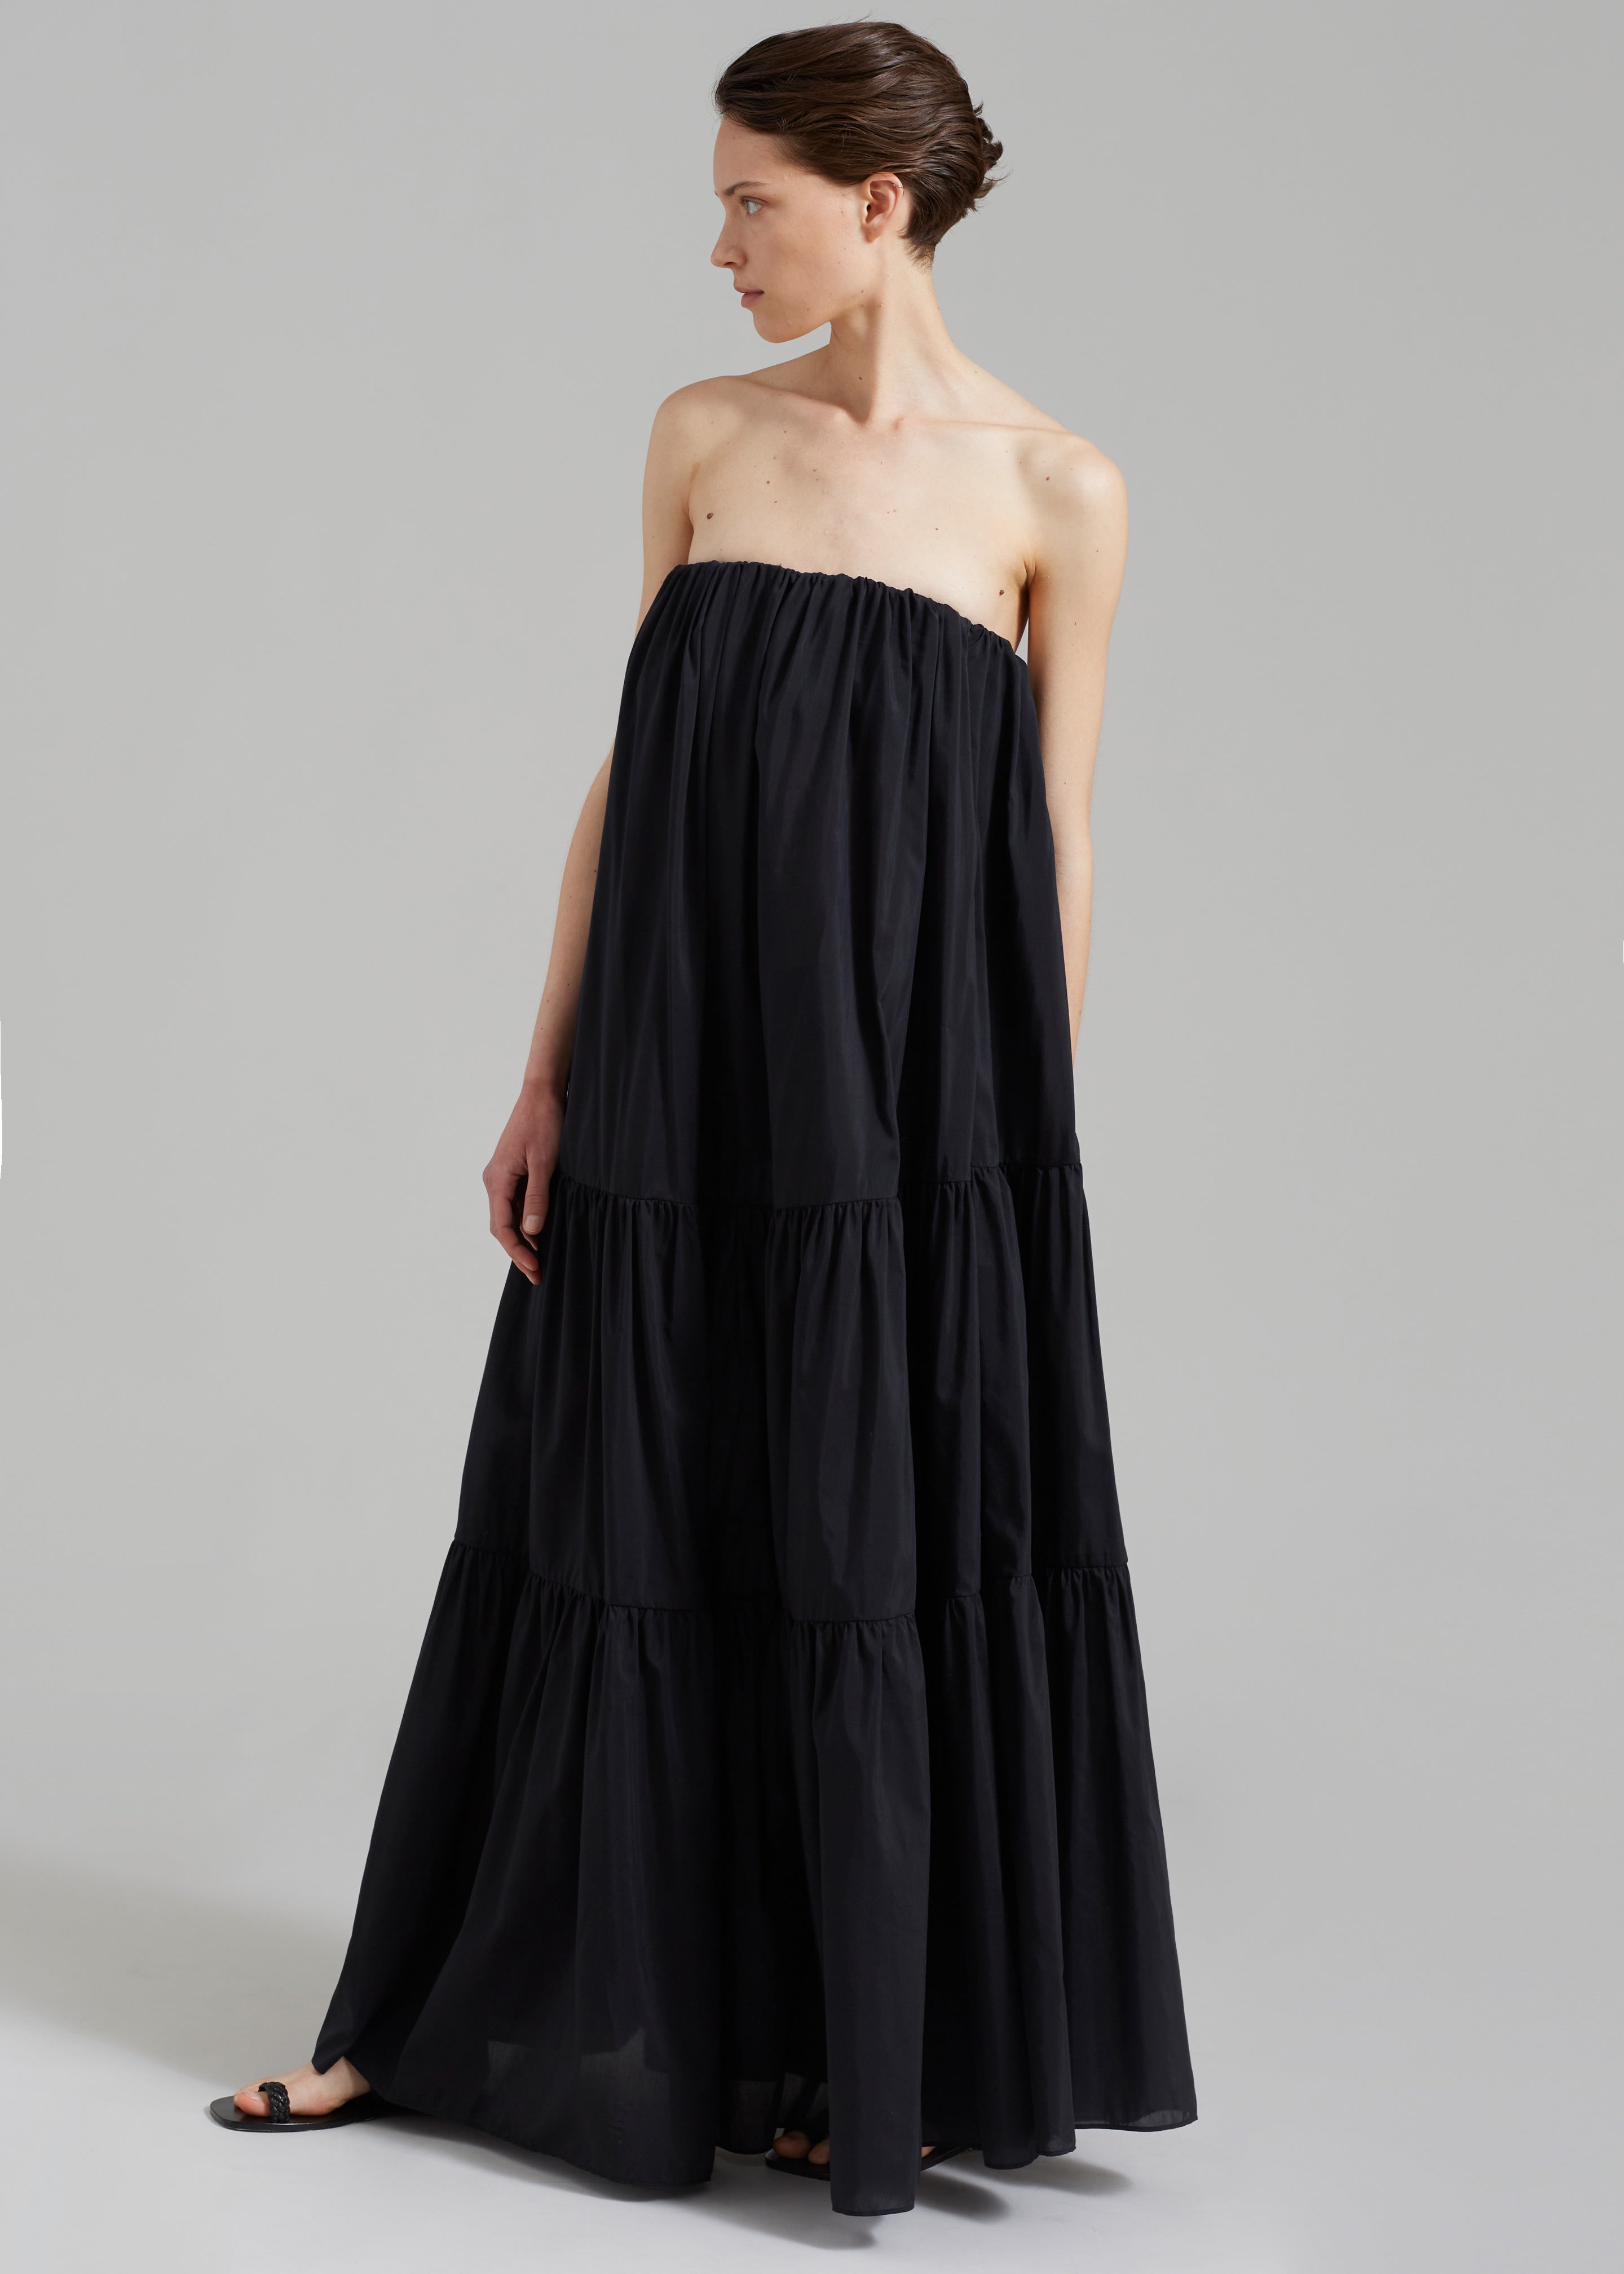 Matteau Voluminous Strapless Tiered Dress - Black - 5